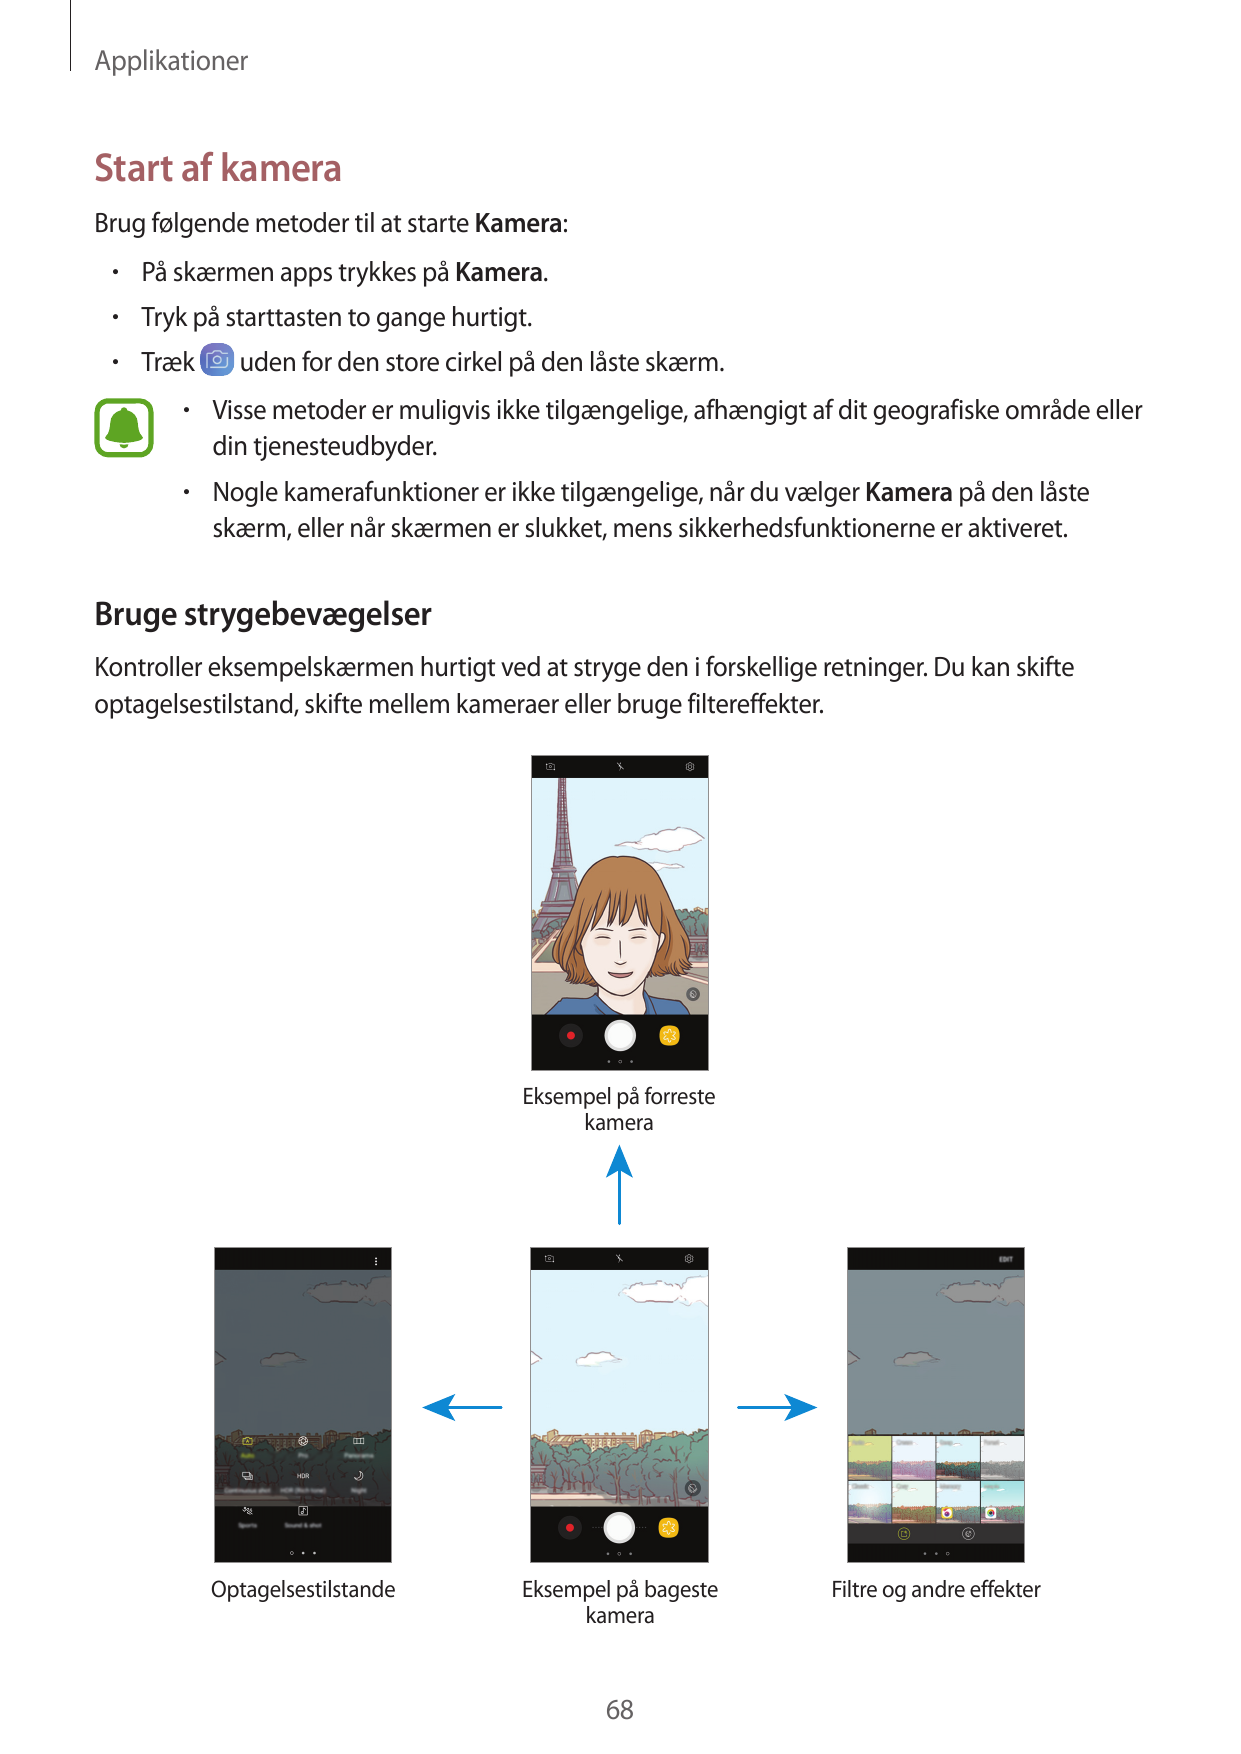 ApplikationerStart af kameraBrug følgende metoder til at starte Kamera:• På skærmen apps trykkes på Kamera.• Tryk på starttasten